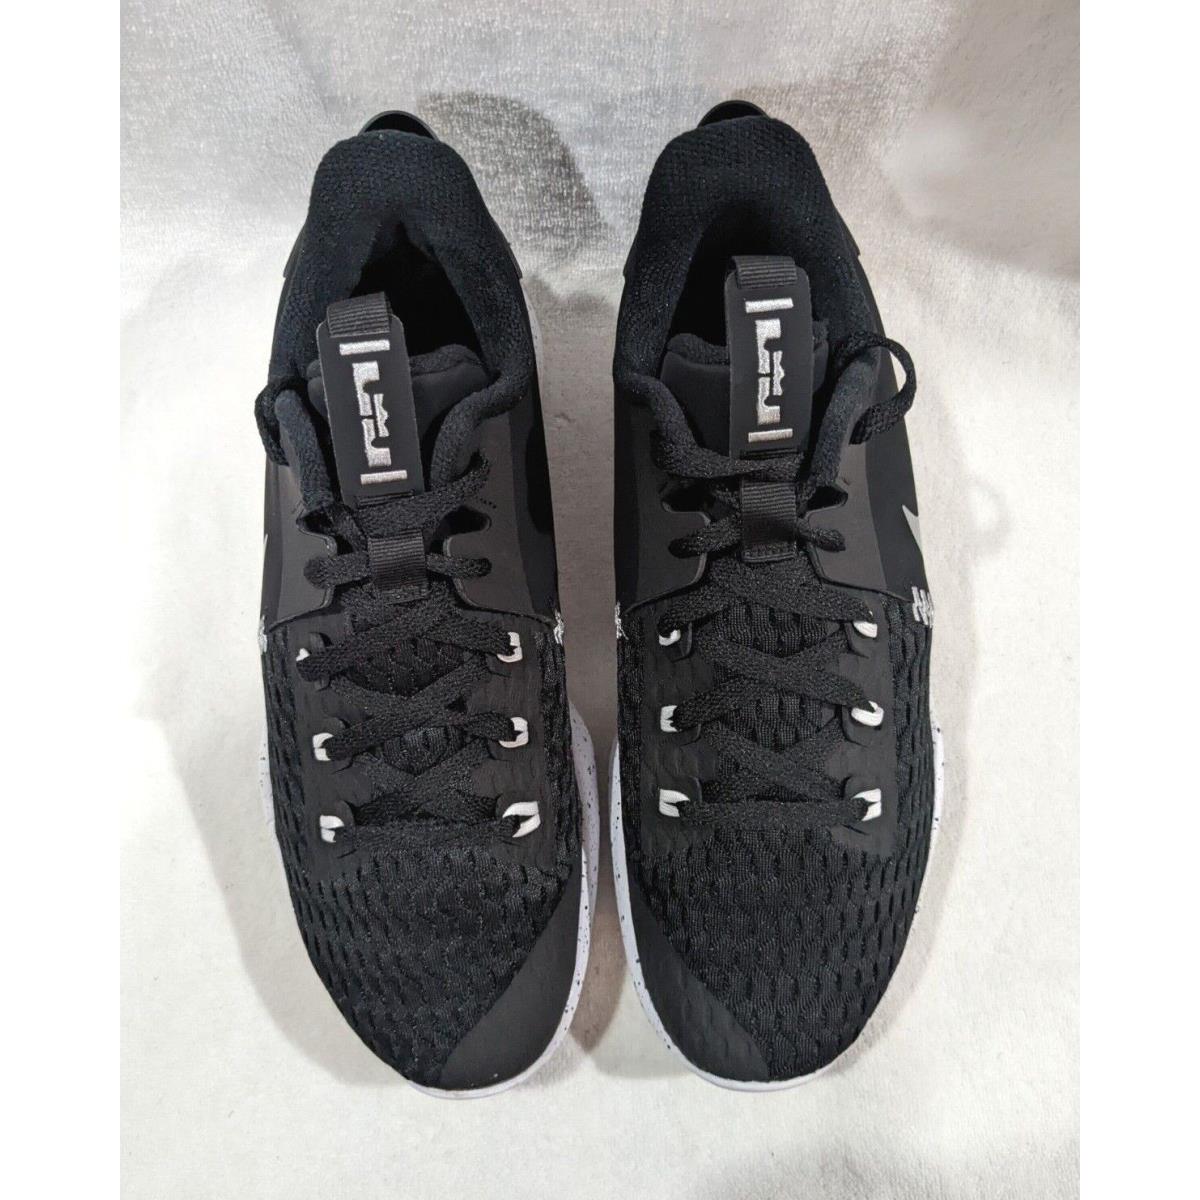 Nike shoes LeBron - Black , Silver , White 1